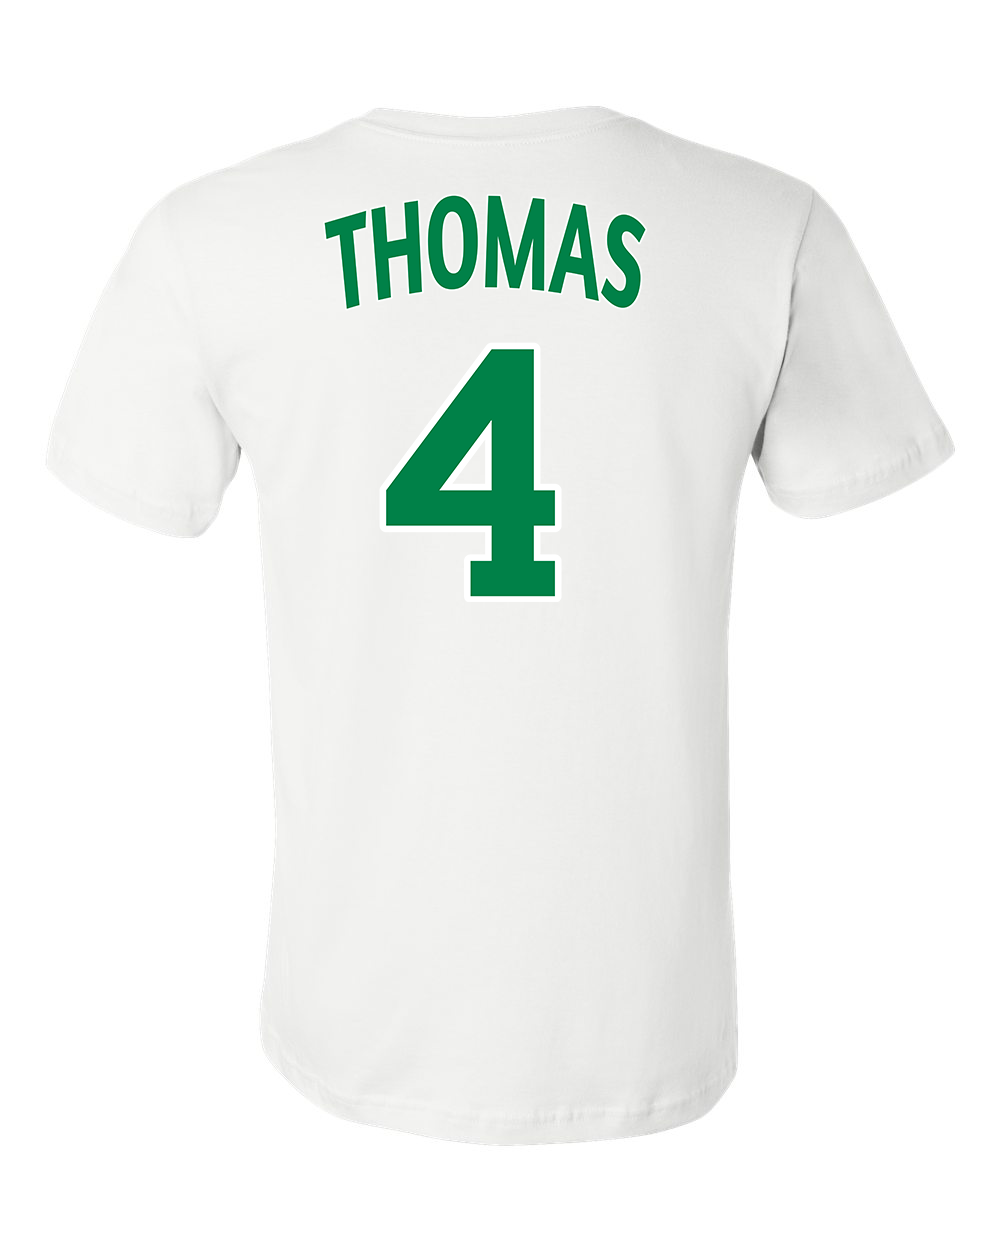 Isaiah Thomas T-Shirt (Black) Small